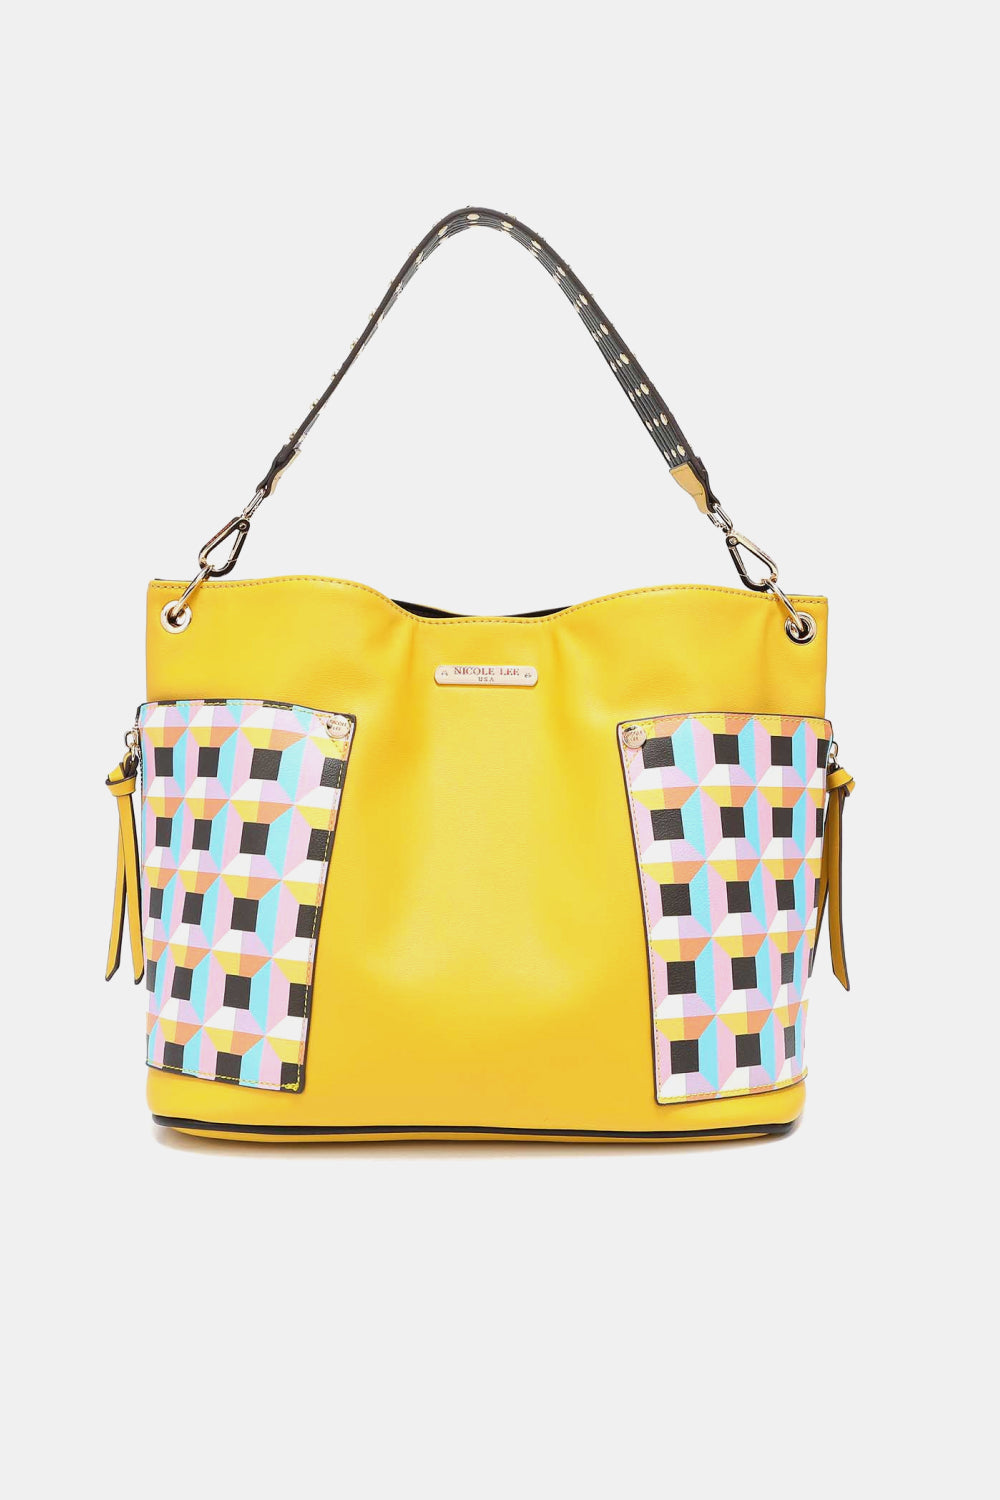 Nicole Lee USA Quihn 3-Piece Handbag Set free shipping -Oh Em Gee Boutique